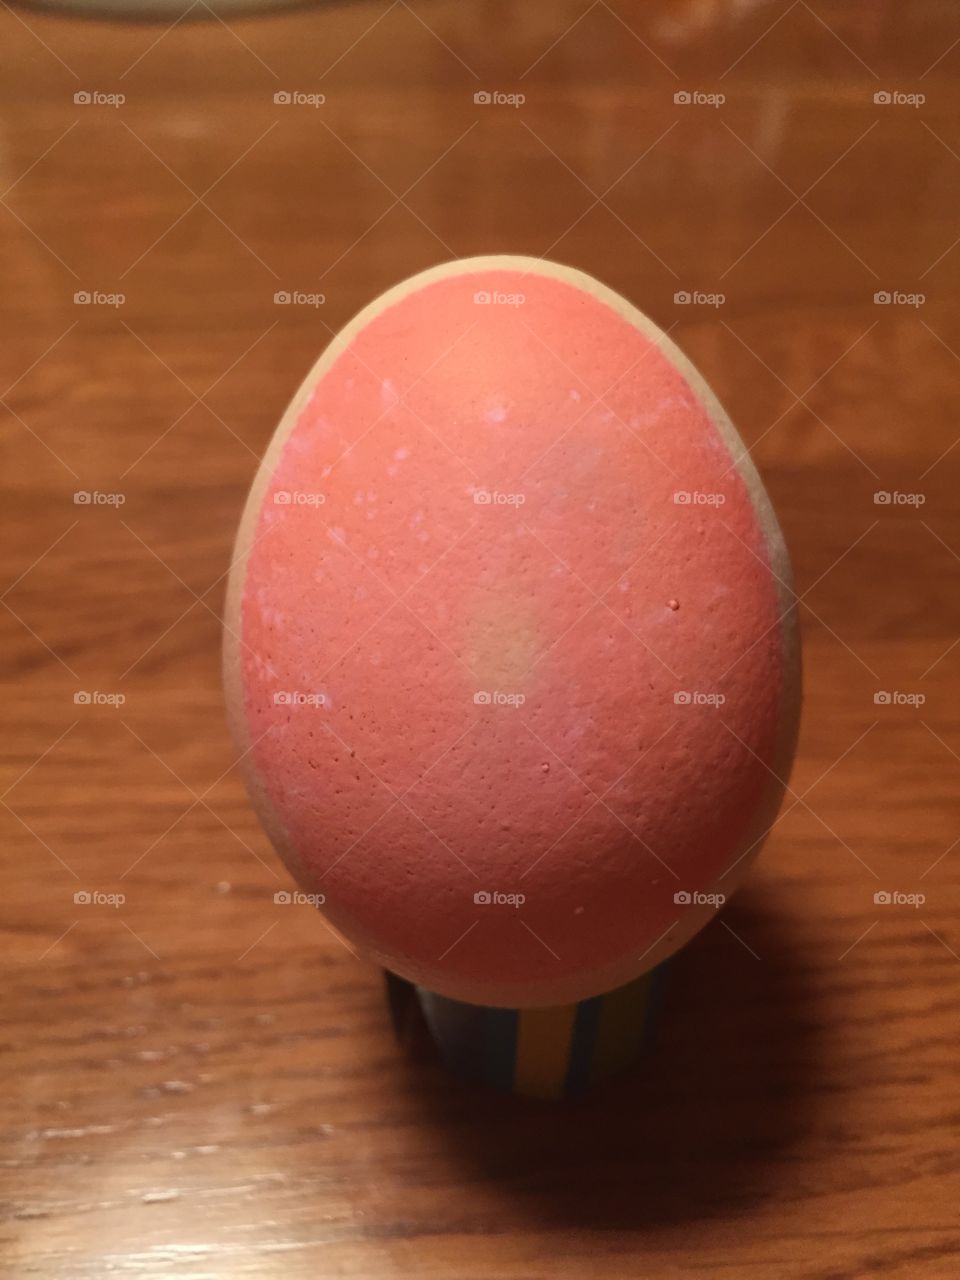 Egg 2. Easter egg dye